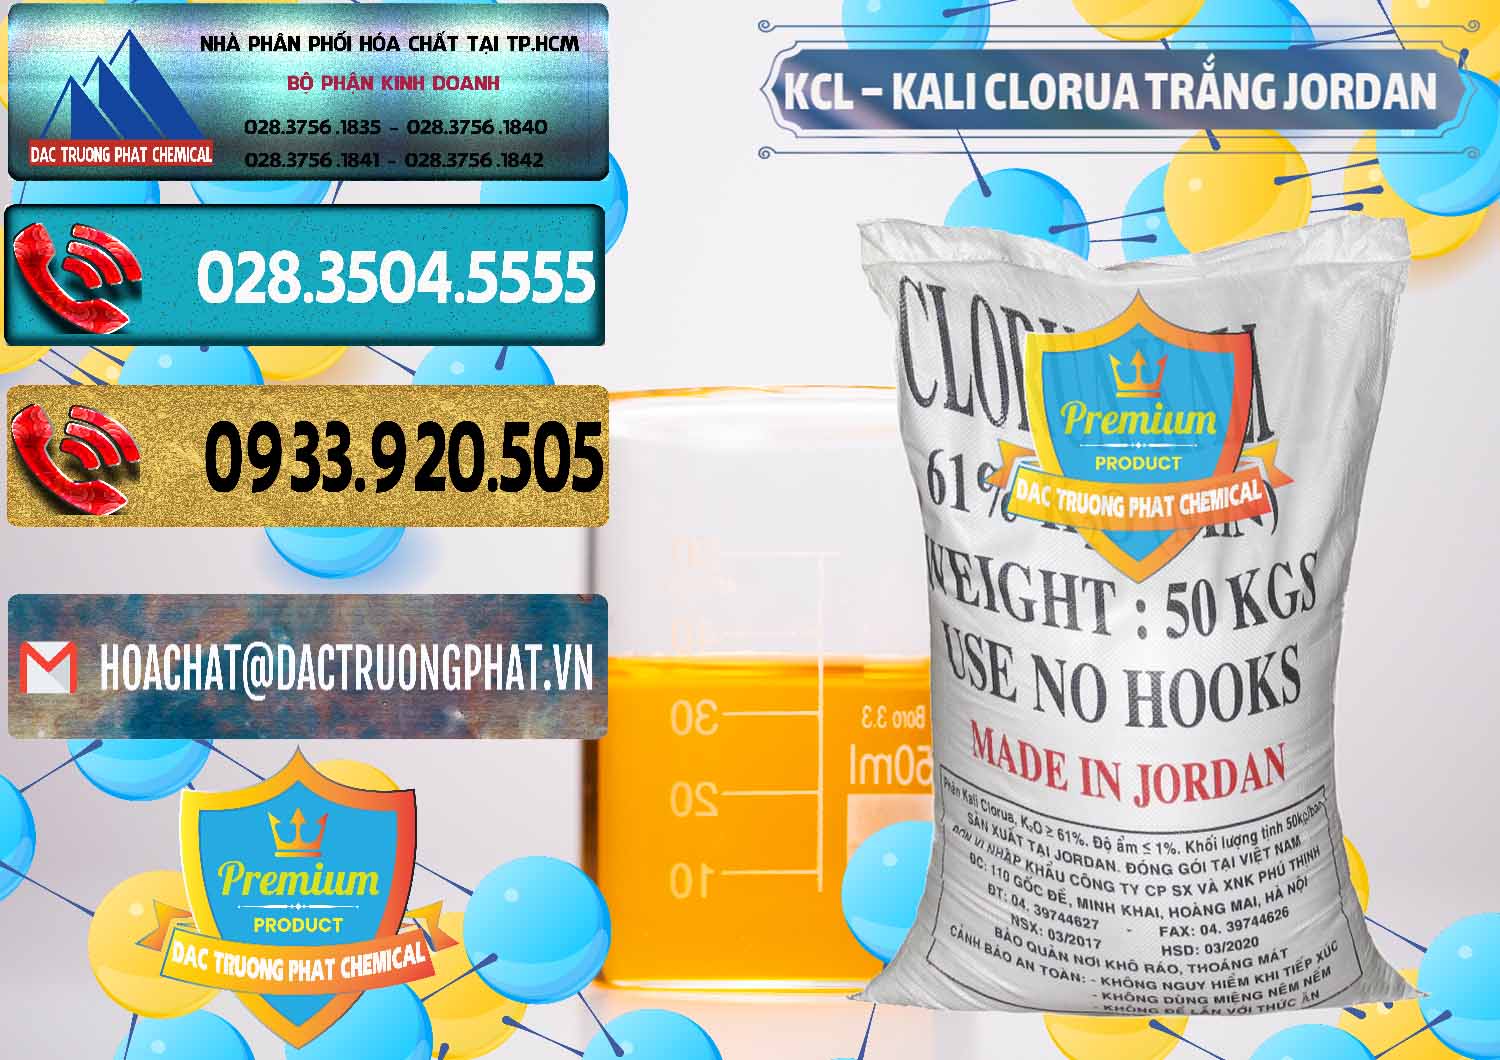 Cty chuyên cung ứng _ bán KCL – Kali Clorua Trắng Jordan - 0088 - Công ty bán ( phân phối ) hóa chất tại TP.HCM - hoachatdetnhuom.com